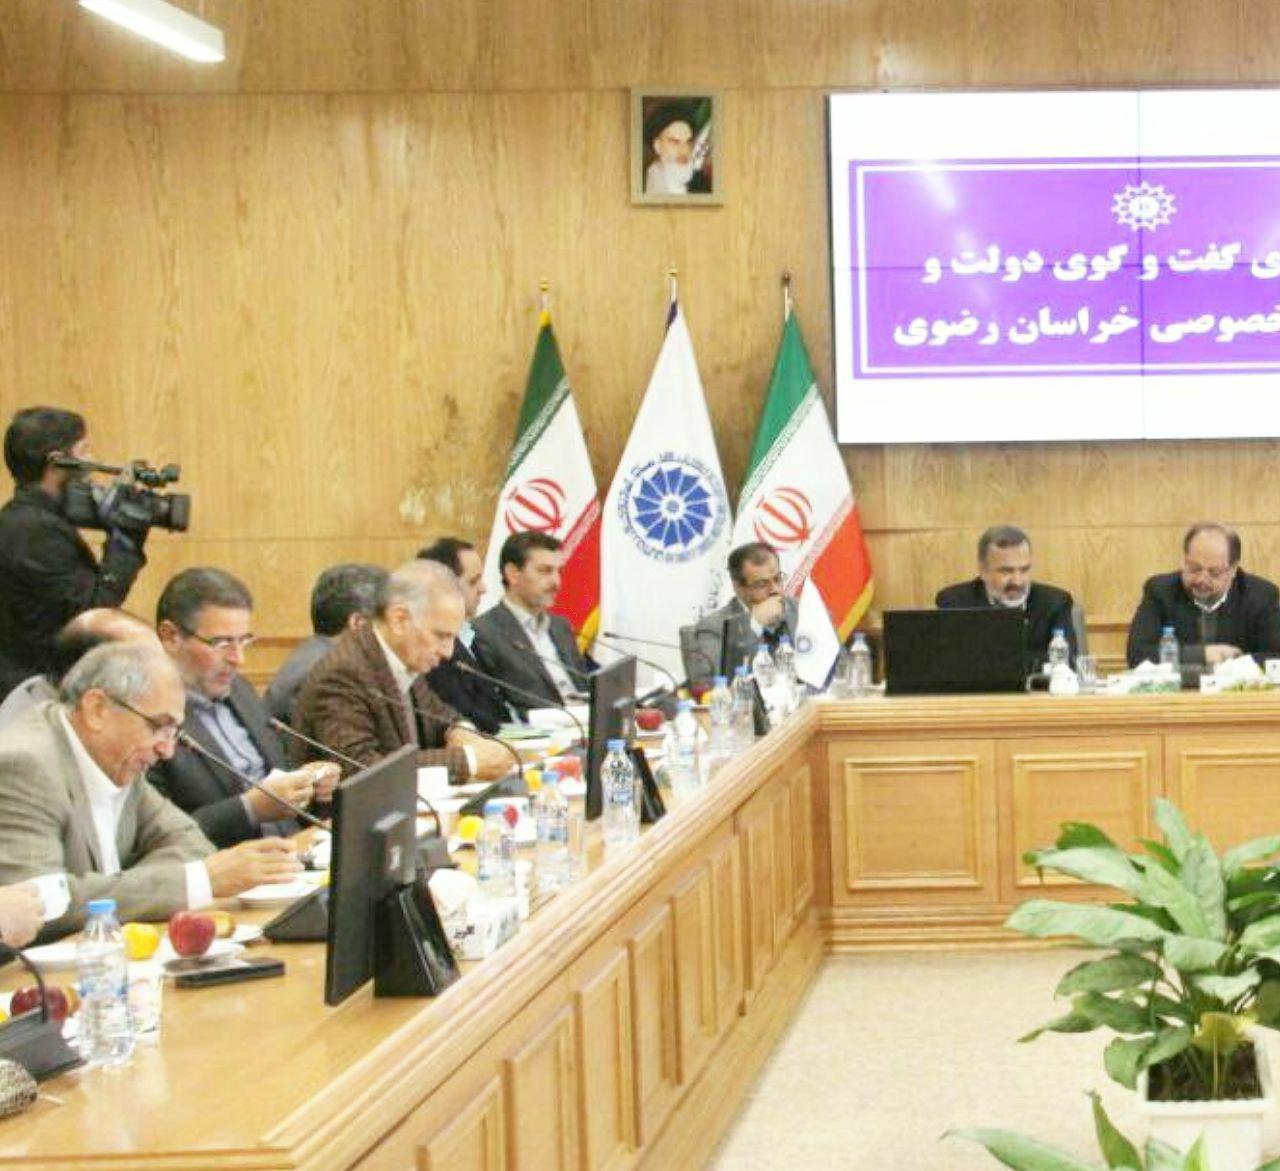 نایب رییس خانه صنعت ، معدن و تجارت ایران : توقع داشتیم وزیری با برنامه جلوی ما بنشیند